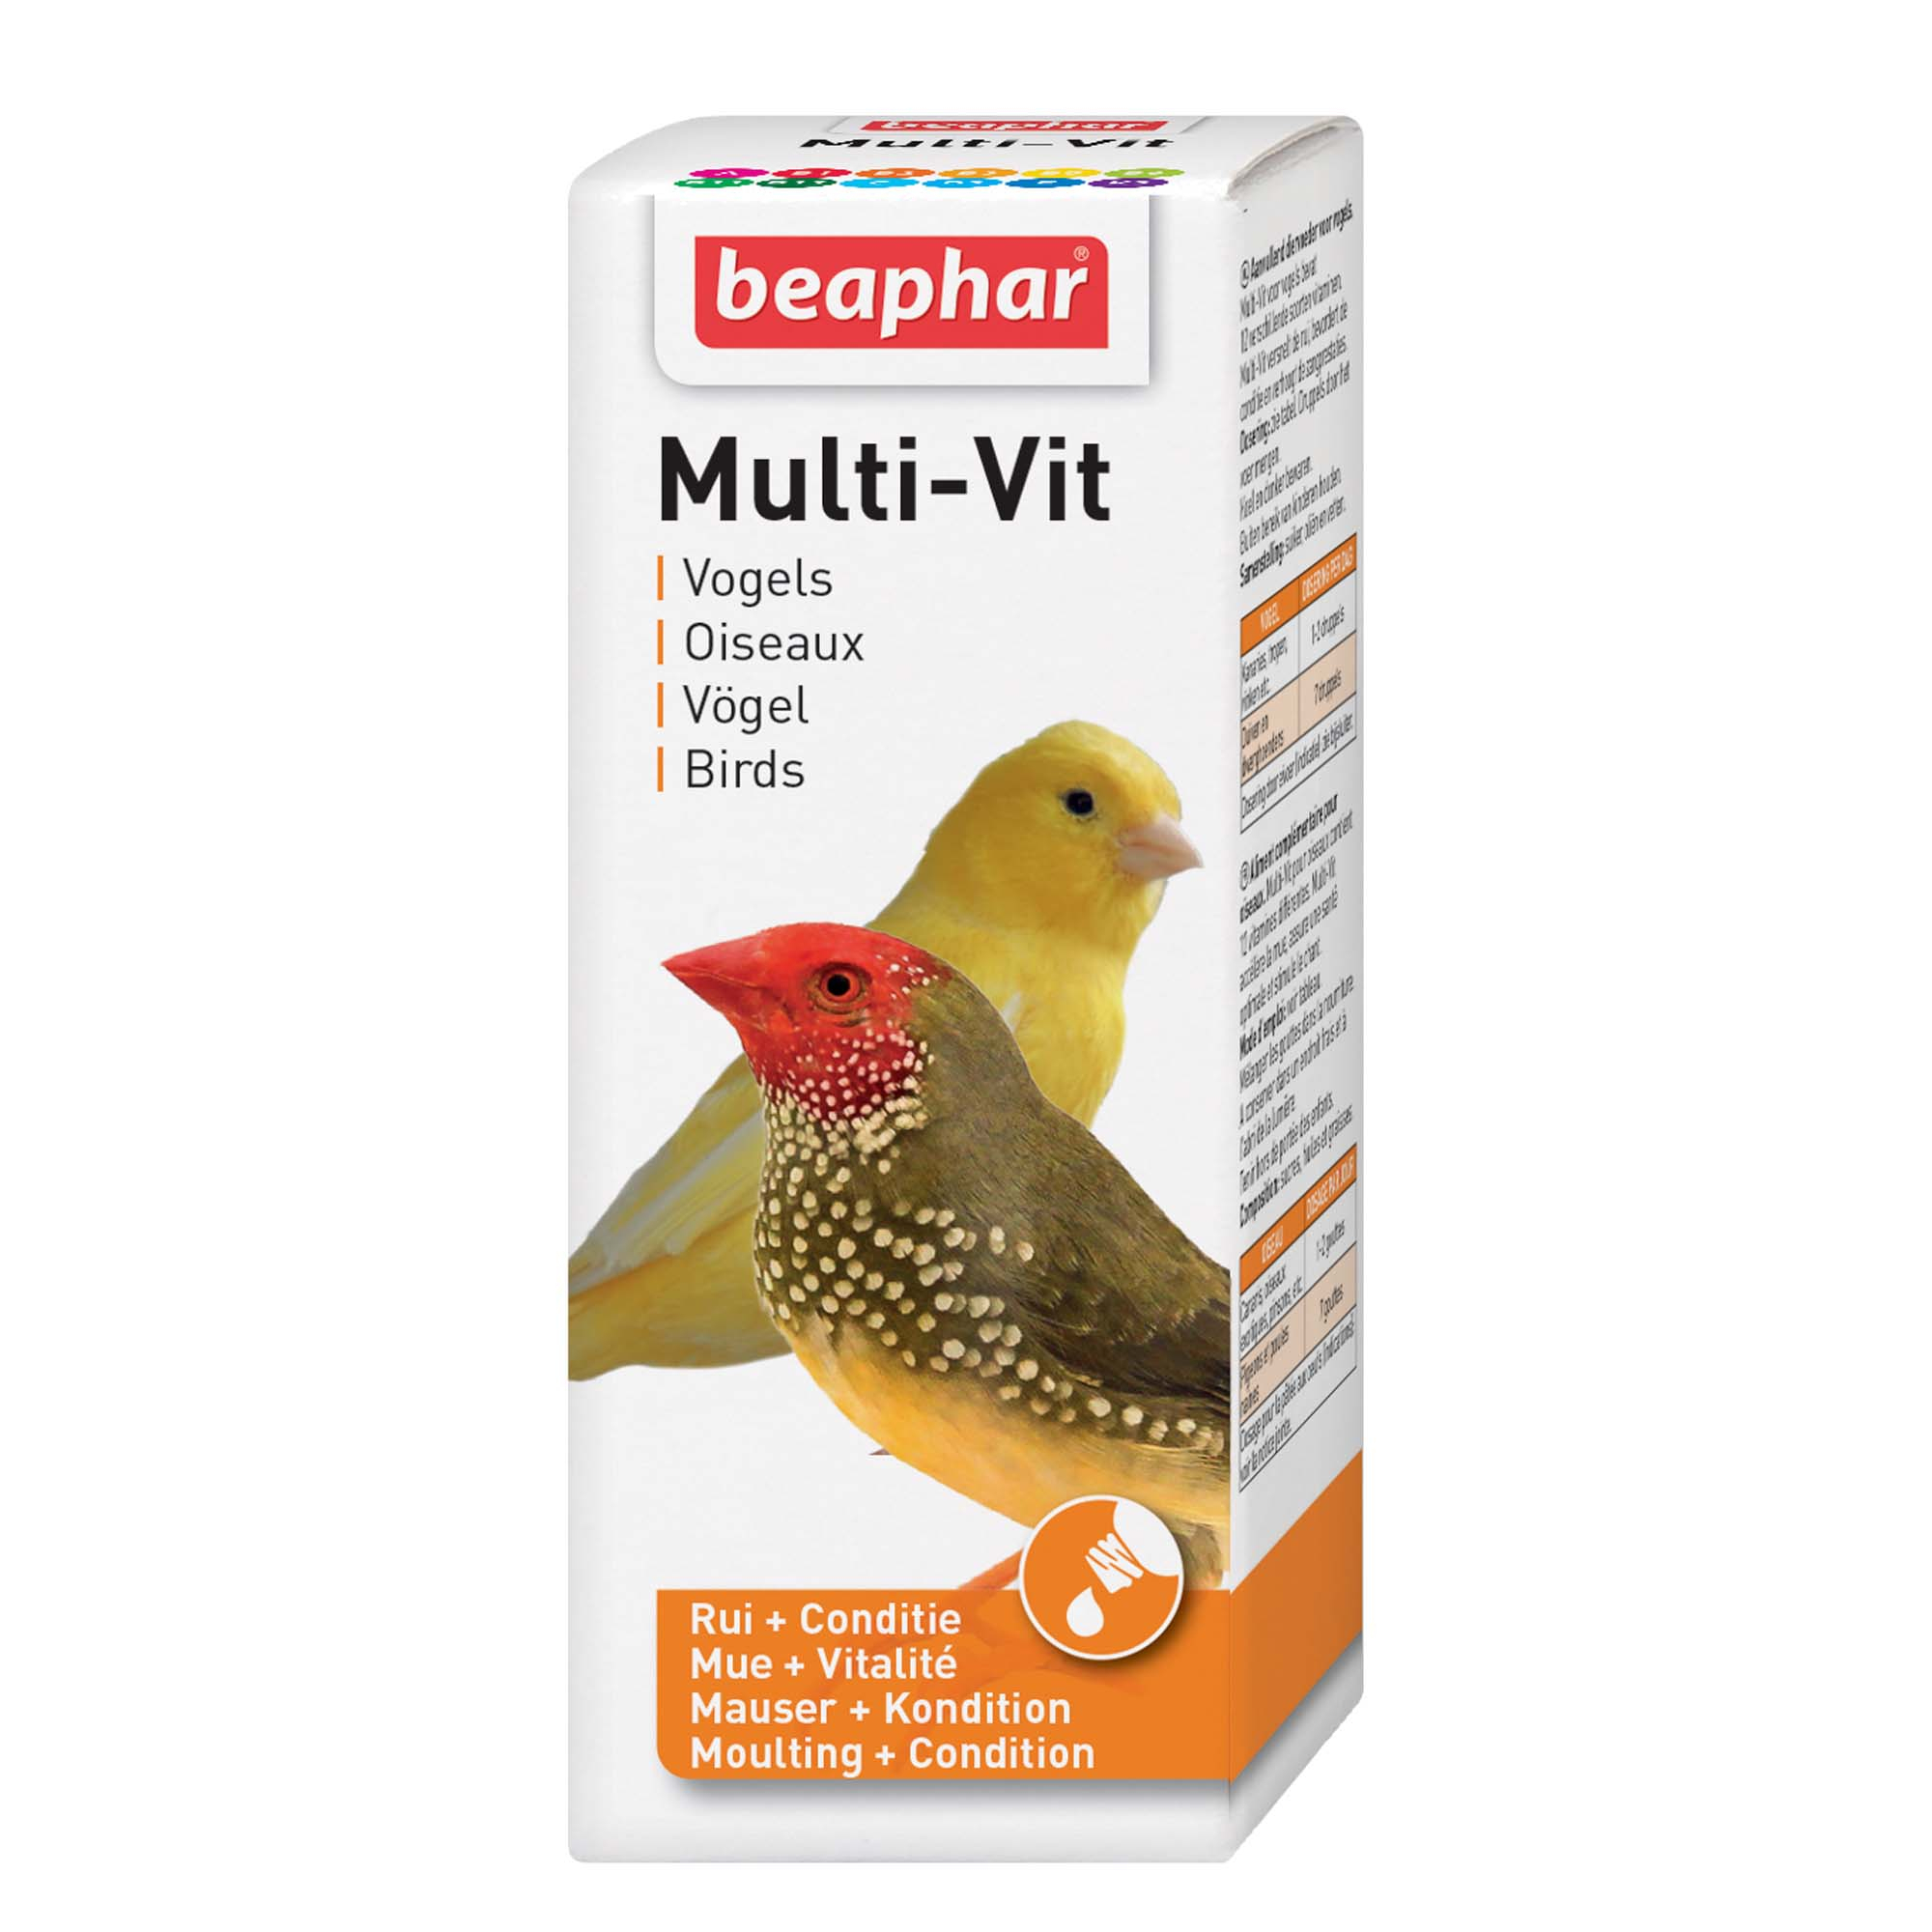 Multi-vit, Vitamine für Vögel